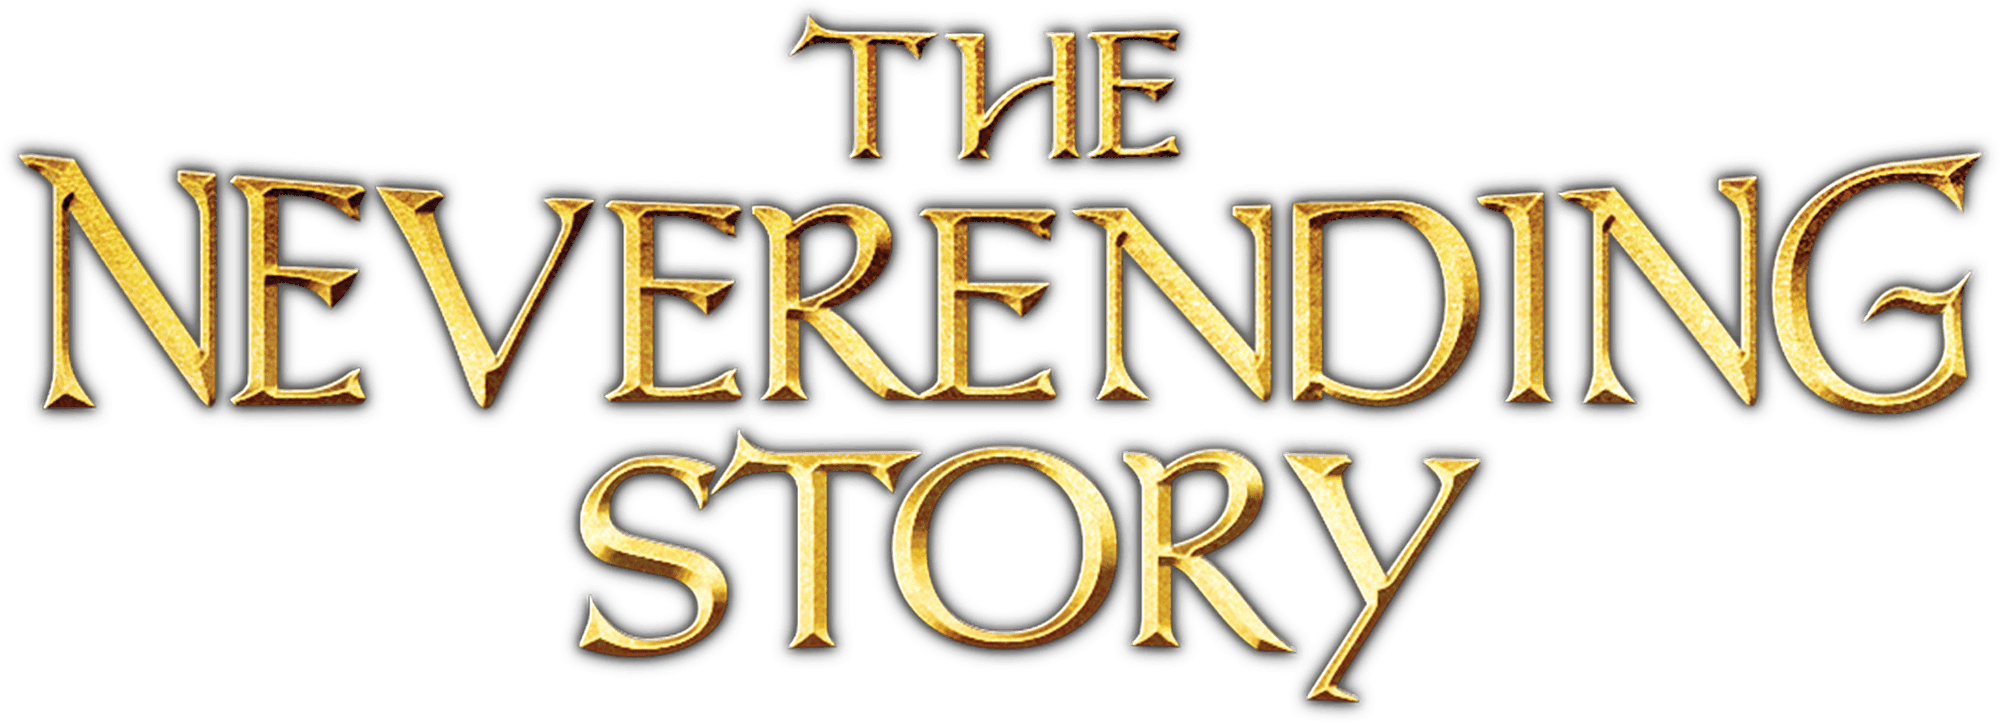 The NeverEnding Story logo